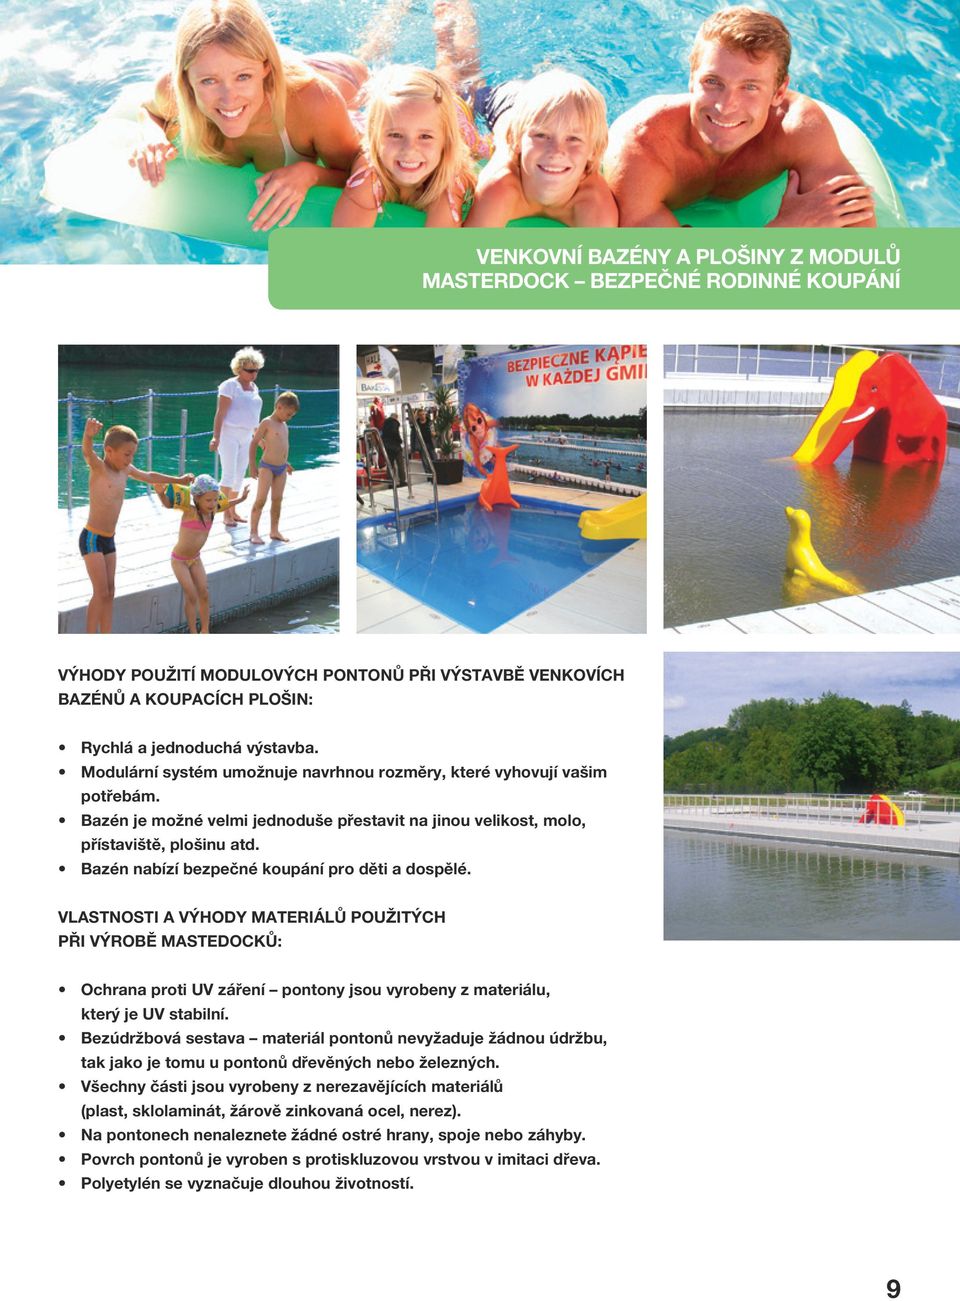 Bazén nabízí bezpečné koupání pro děti a dospělé. VLASTNOSTI A VÝHODY MATERIÁLŮ POUŽITÝCH PŘI VÝROBĚ MASTEDOCKŮ: Ochrana proti UV záření pontony jsou vyrobeny z materiálu, který je UV stabilní.